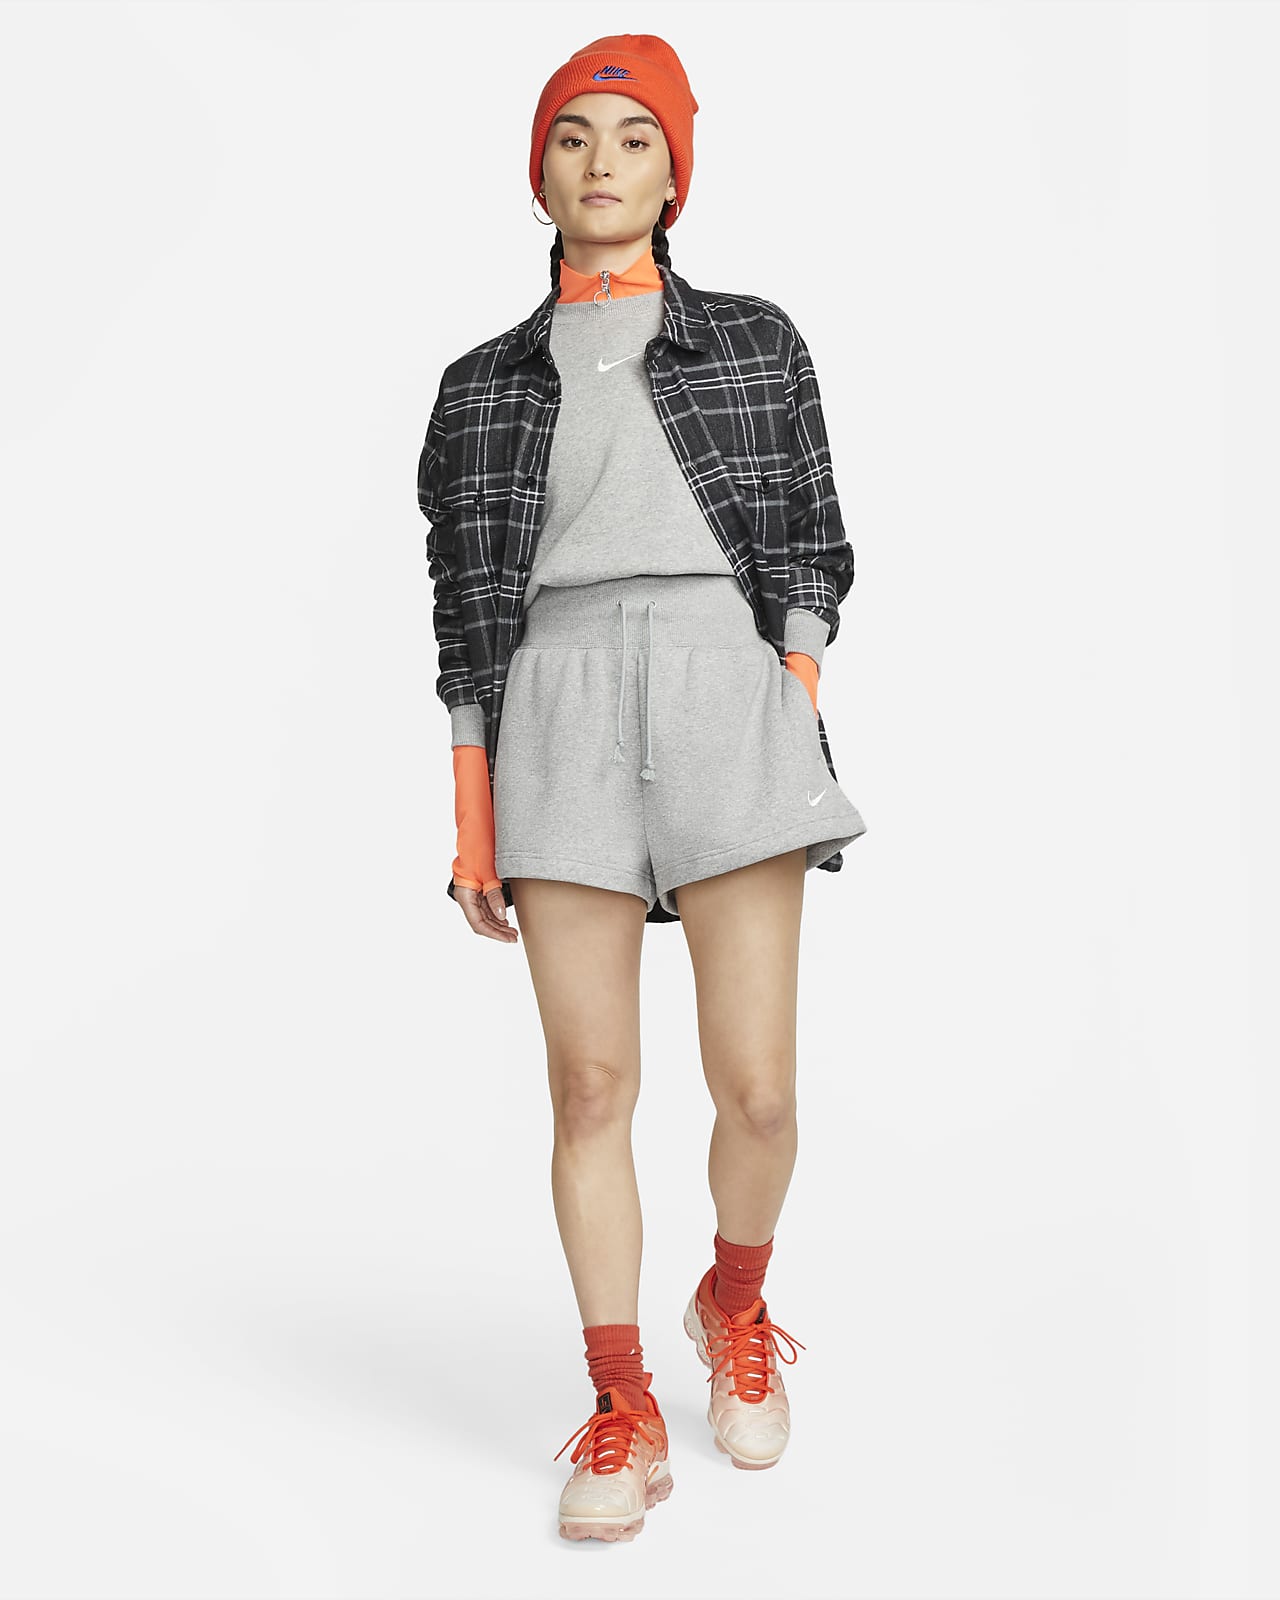 Nike Sportswear Phoenix Fleece Women's High-Waisted Shorts